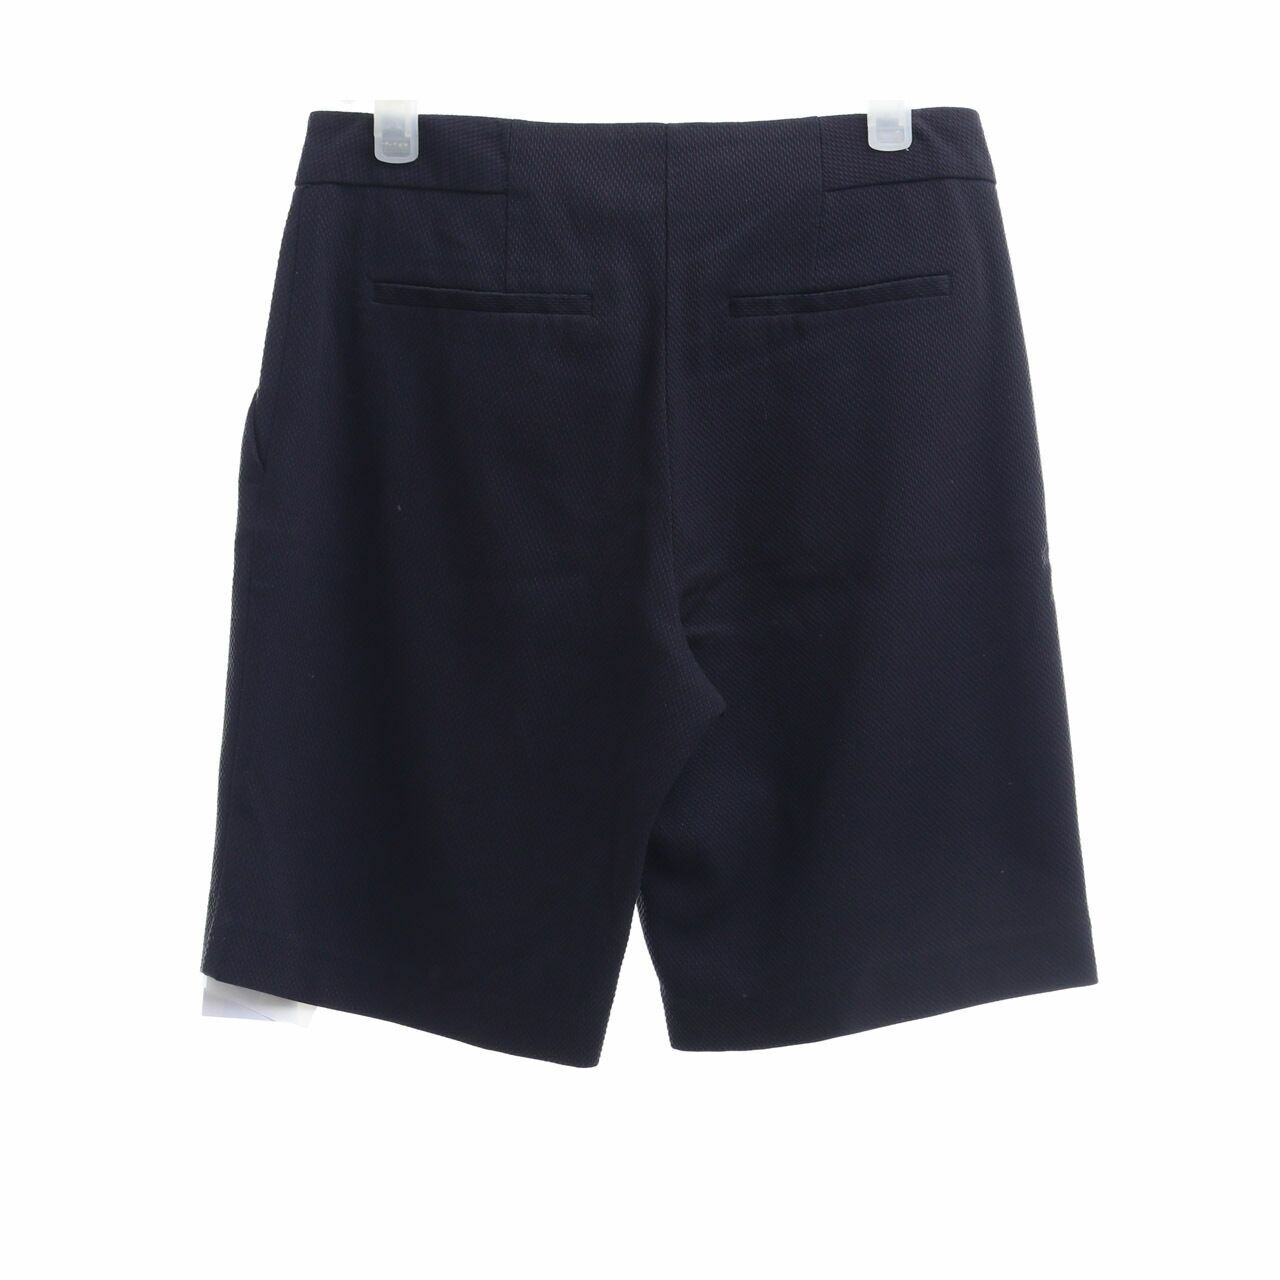 Marks & Spencer Black Shorts Pants 